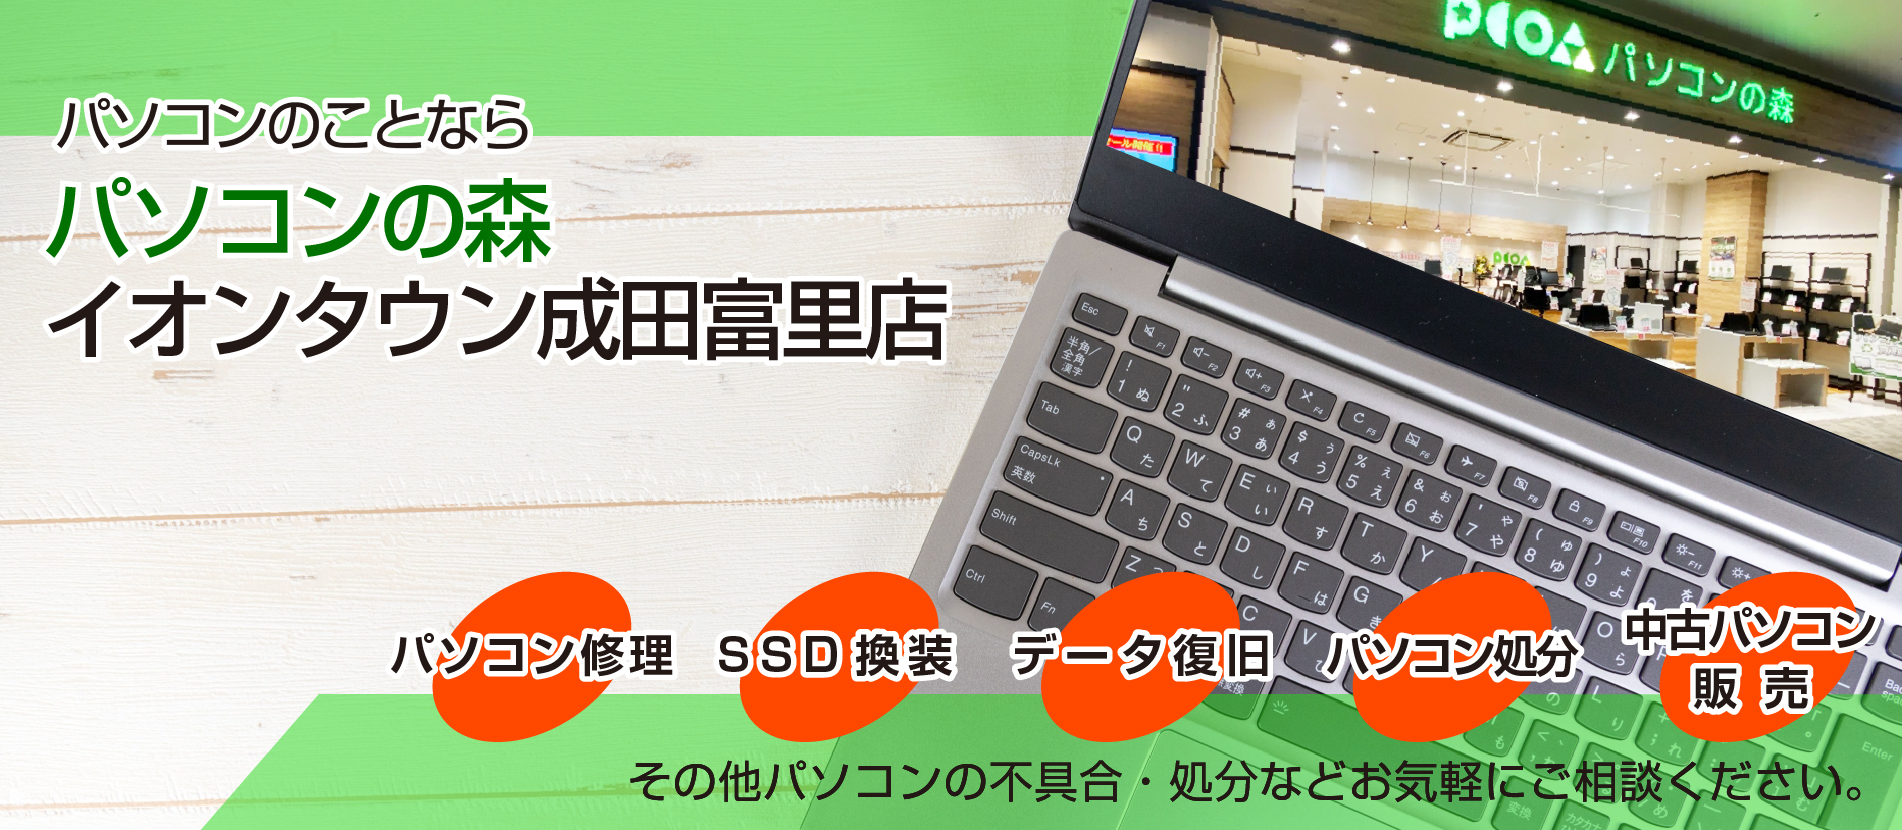 成田、富里でパソコン修理なら、「パソコンの森 イオンタウン成田富里店」へ。